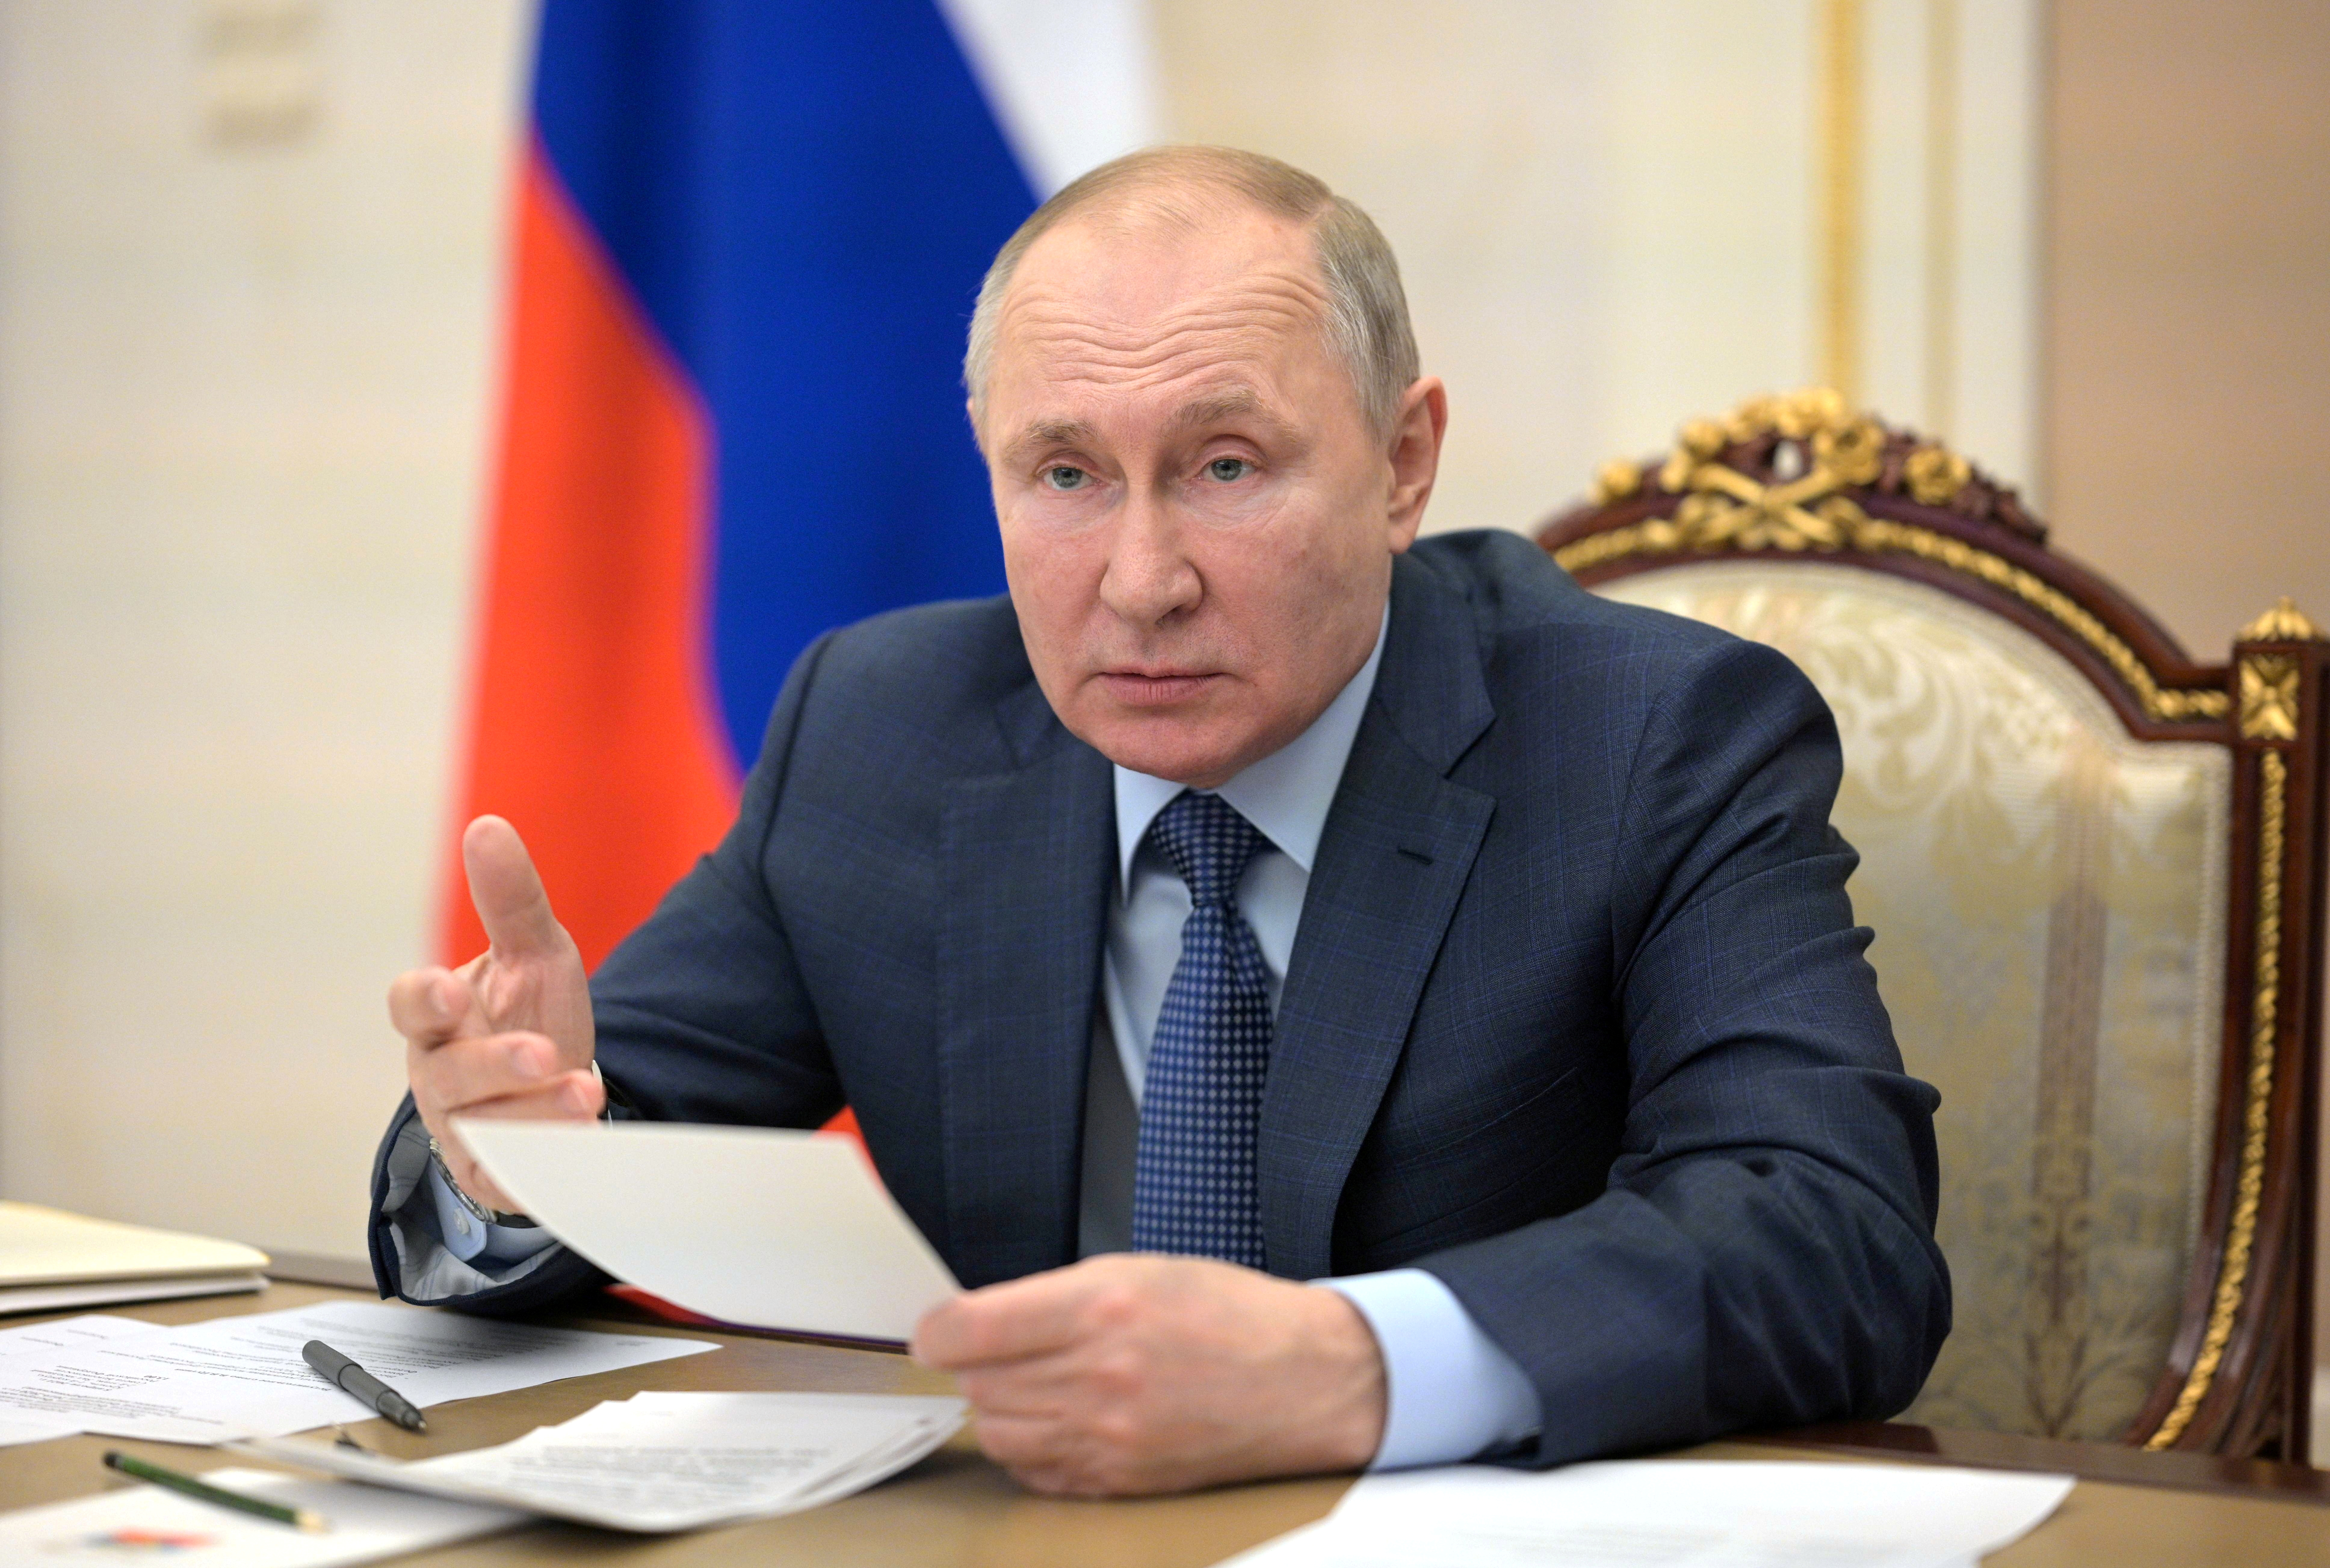 Vladimir Putin, presidente de Rusia (Sputnik/Alexei Druzhinin/Kremlin via REUTERS)